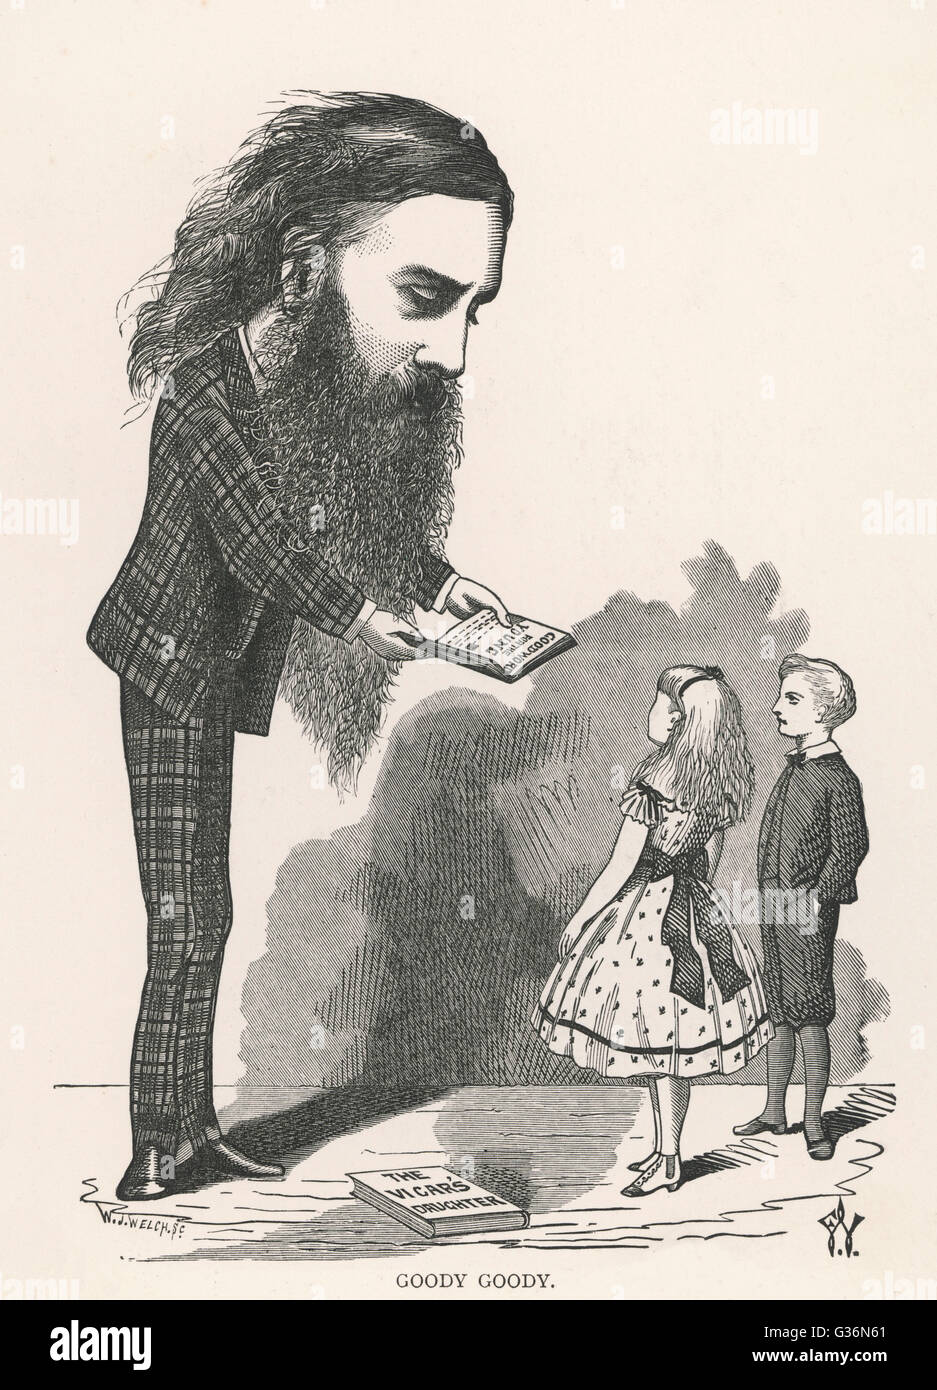 Una caricatura en la representación de George MacDonald (1824-1905), autor escocés, poeta y ministro cristiano. Sus libros para niños son muy populares. Fecha: 1873 Foto de stock